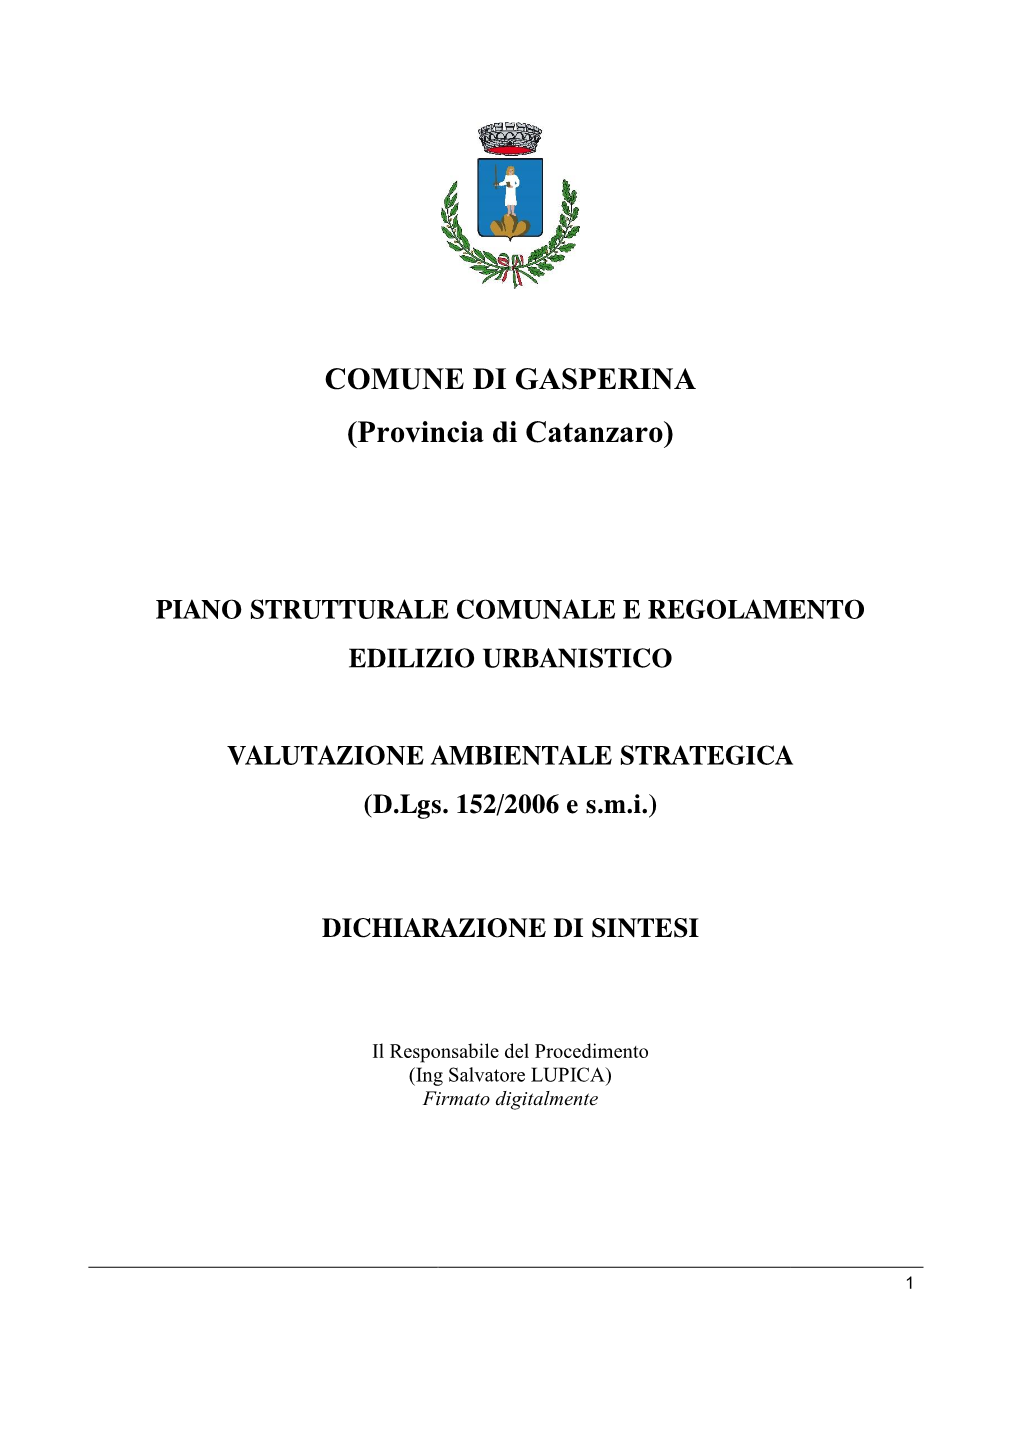 COMUNE DI GASPERINA (Provincia Di Catanzaro)